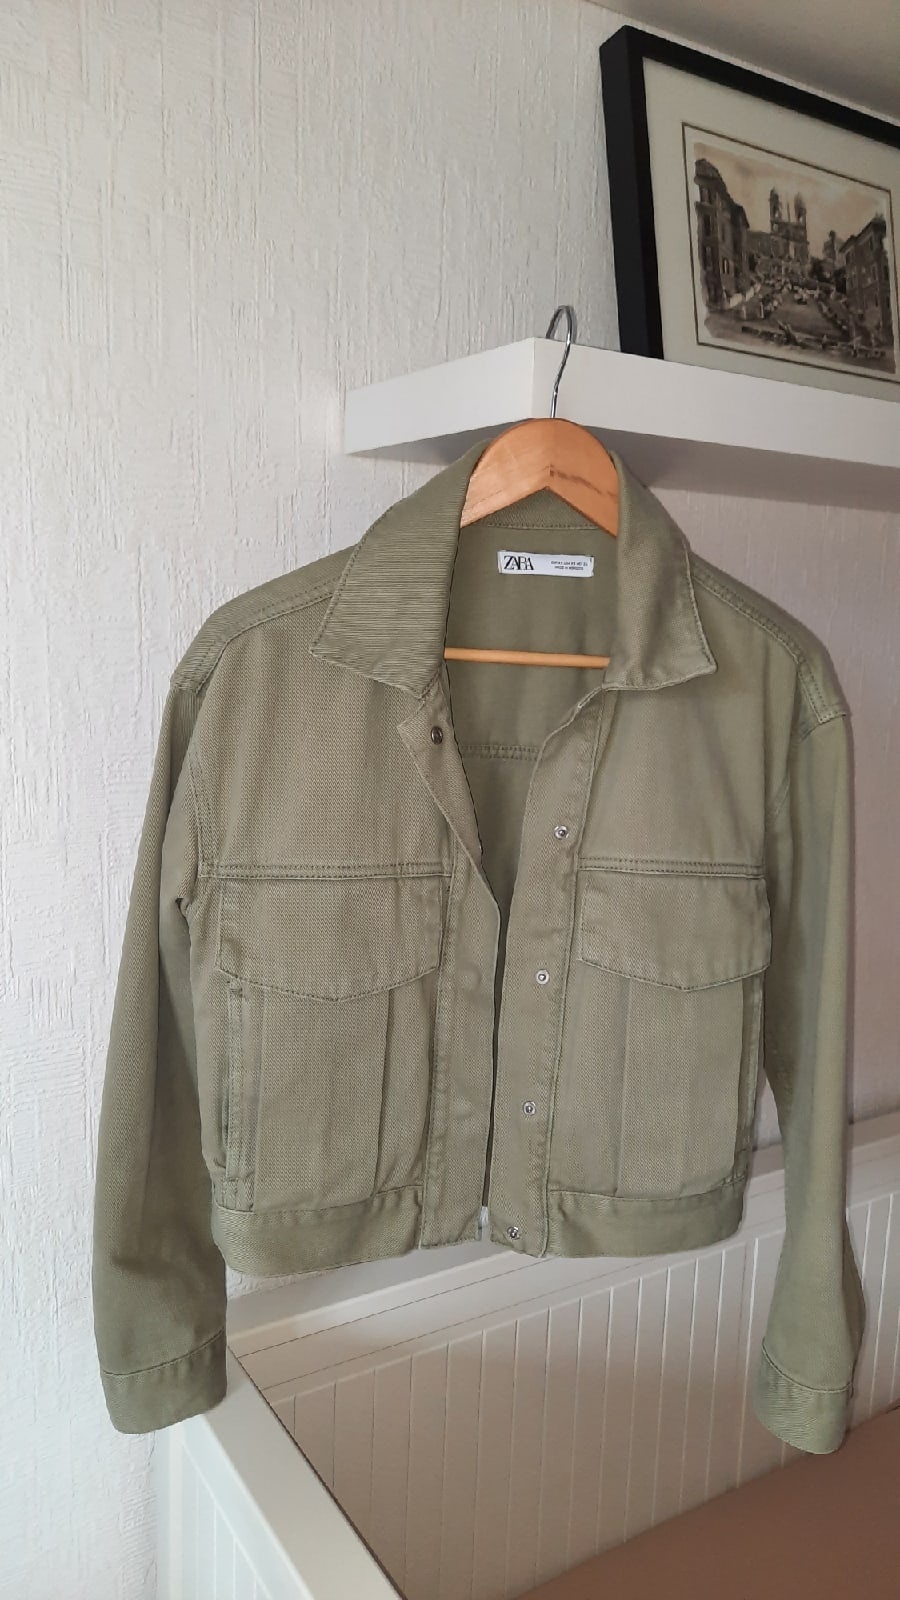 Джинсовая куртка ZARA деним цвета олива-хаки размер XS подойдет на S M, вмагазине ZARA — на Шопоголик